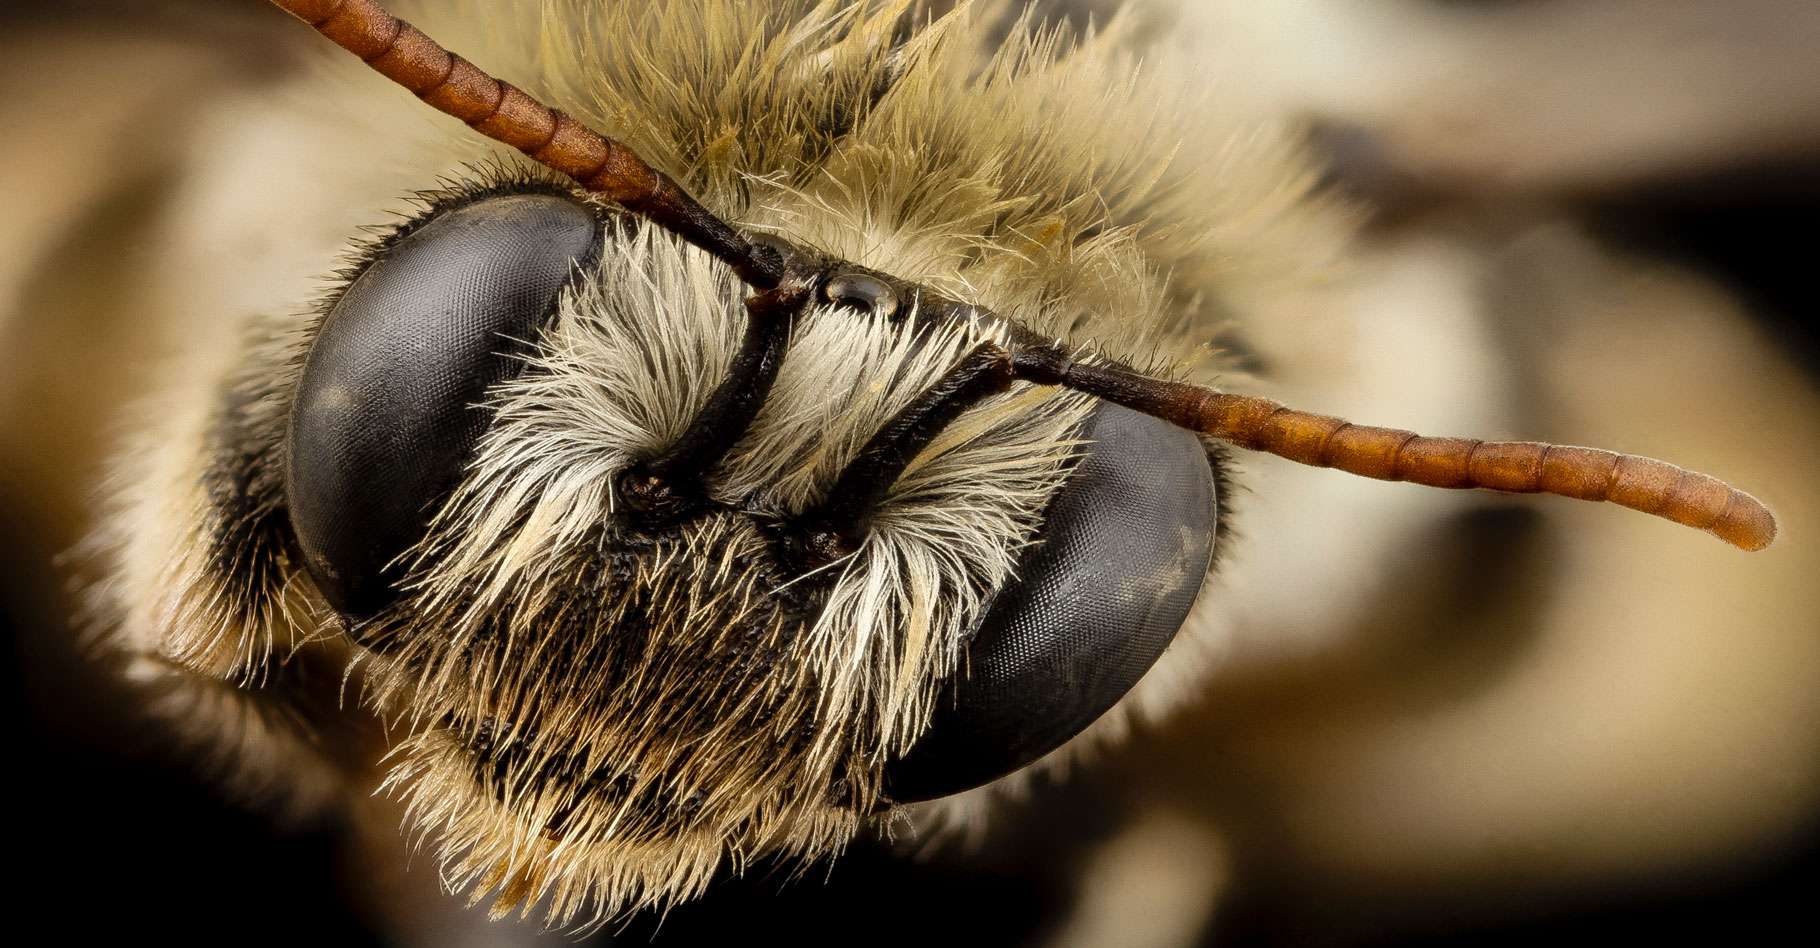 Anatomie de l'abeille (Appis mellifera)  Abeille, Infographie, La vie des  abeilles